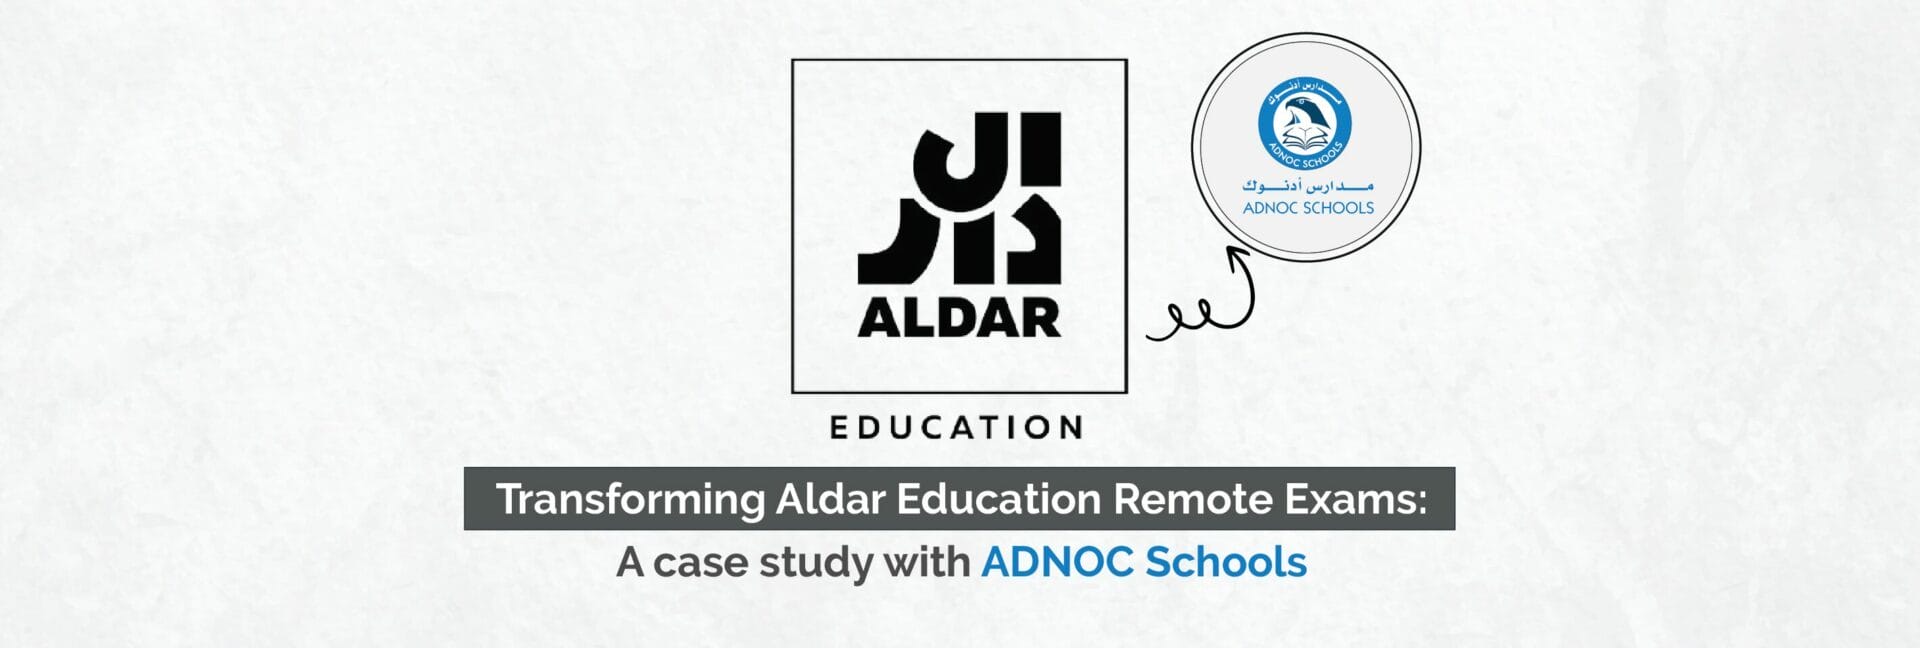 Transforming Aldar Education Remote Exams: A case study with ADNOC Schools